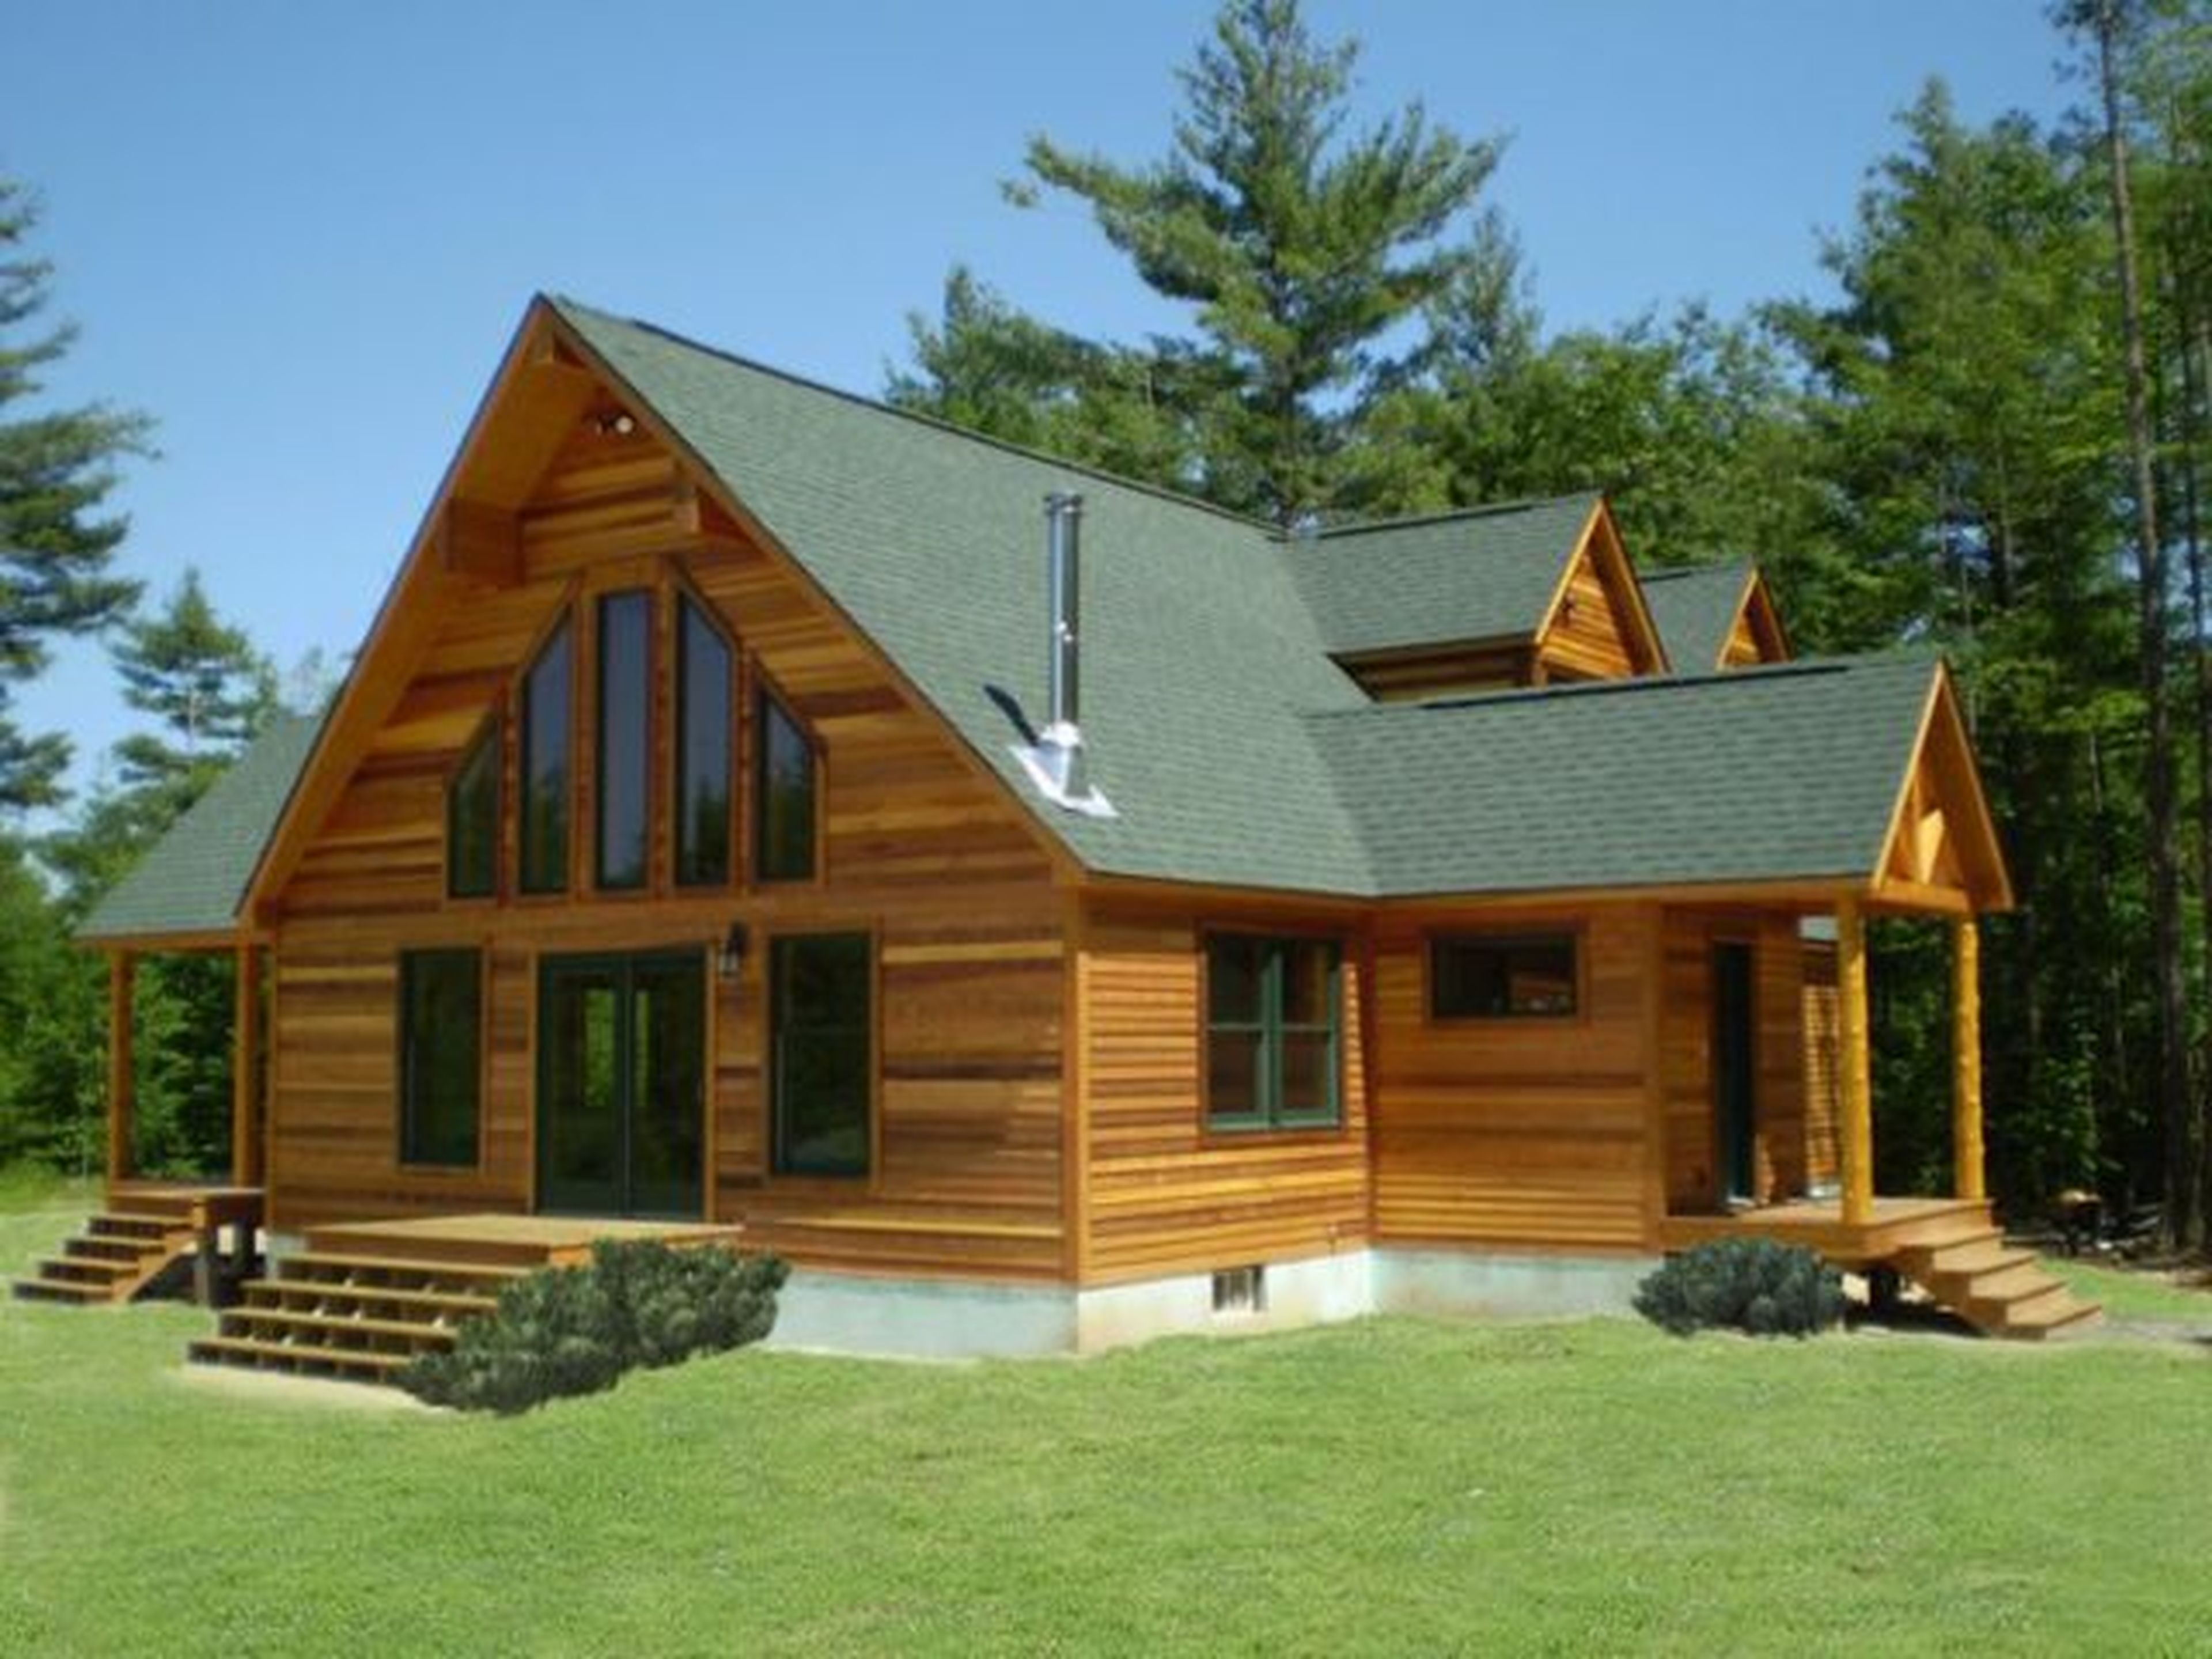 Las casas prefabricadas de madera pueden llegar a durar un siglo.